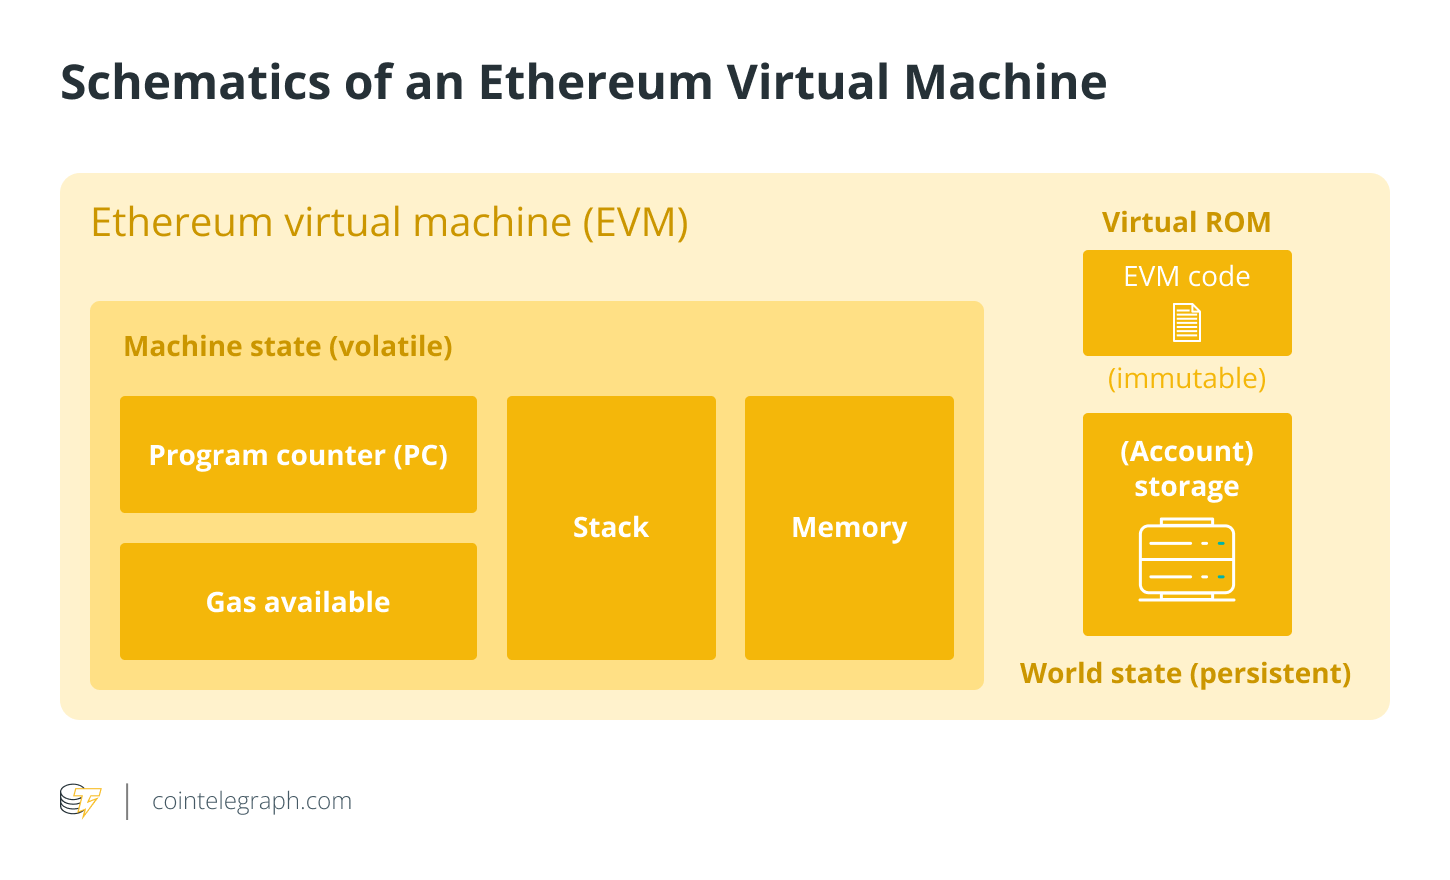 Schematics of an Ethereum Virtual Machine